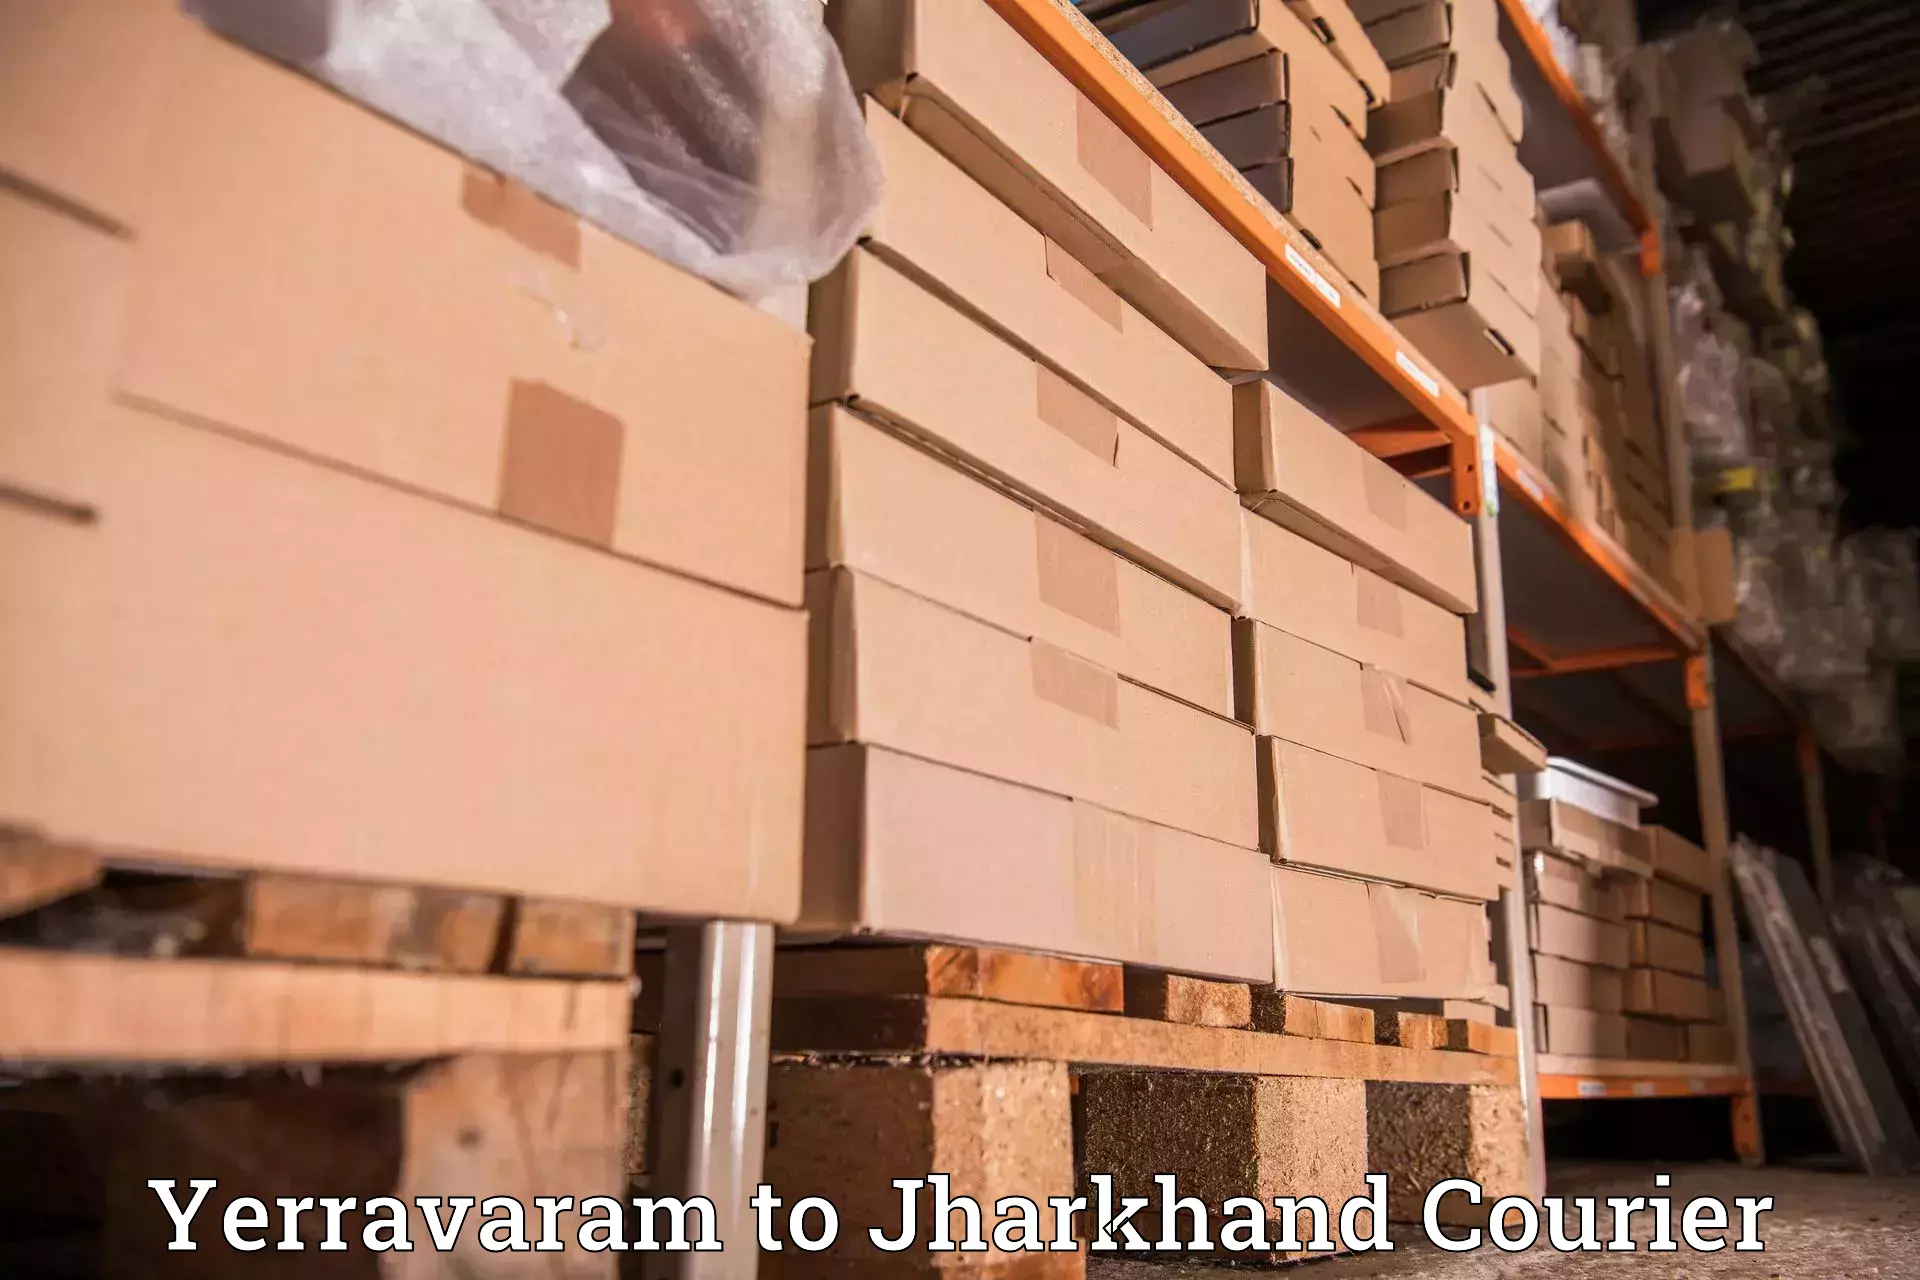 Customer-centric shipping in Yerravaram to Garhwa